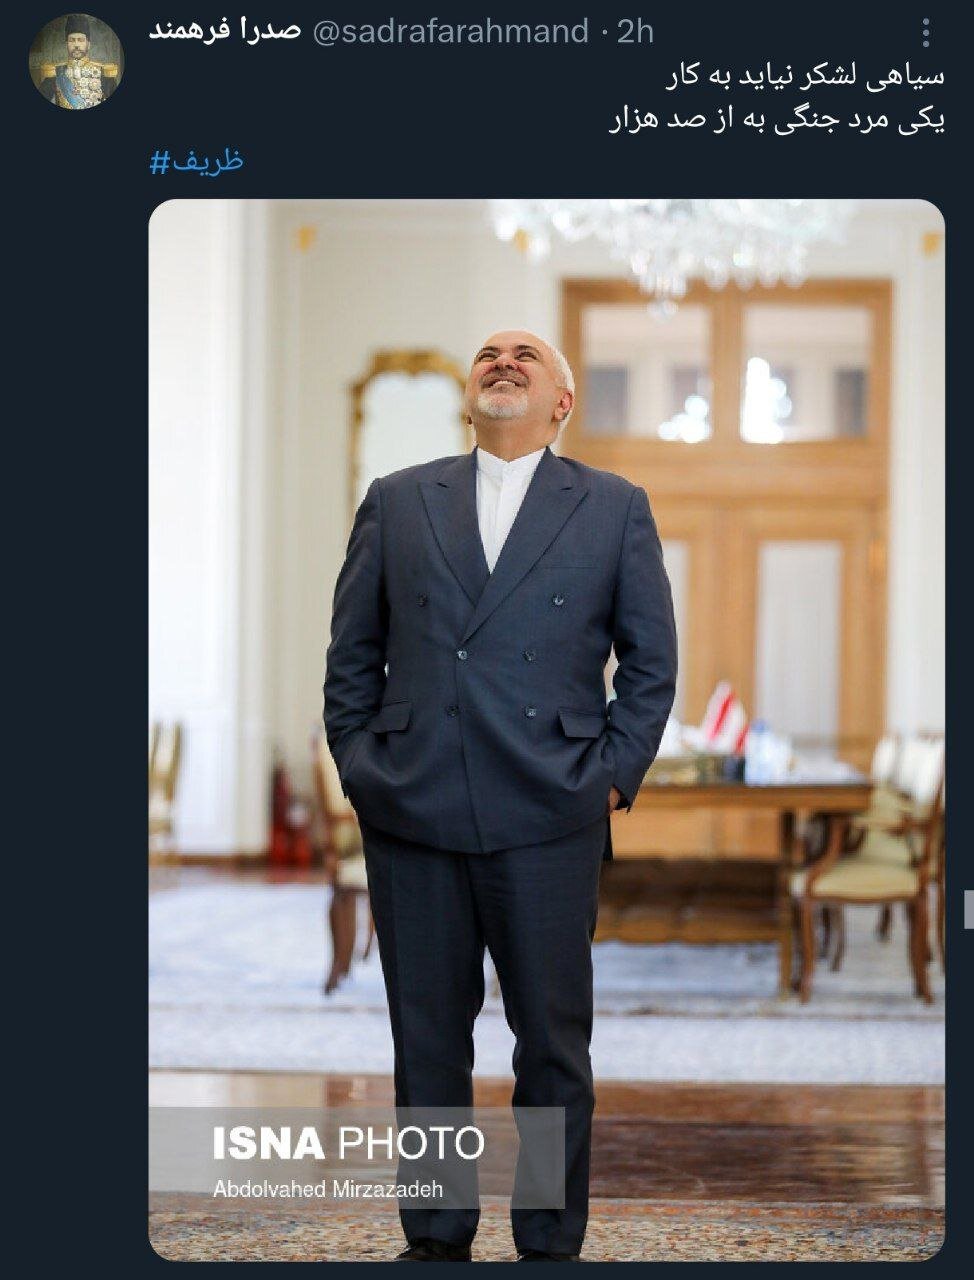 زلزله توئیتری ظریف / او در 5 دقیقه از روی گفتمان «کاسبان تحریم» با غلتک رد شد / یکی مرد جنگی به از صد هزار 2